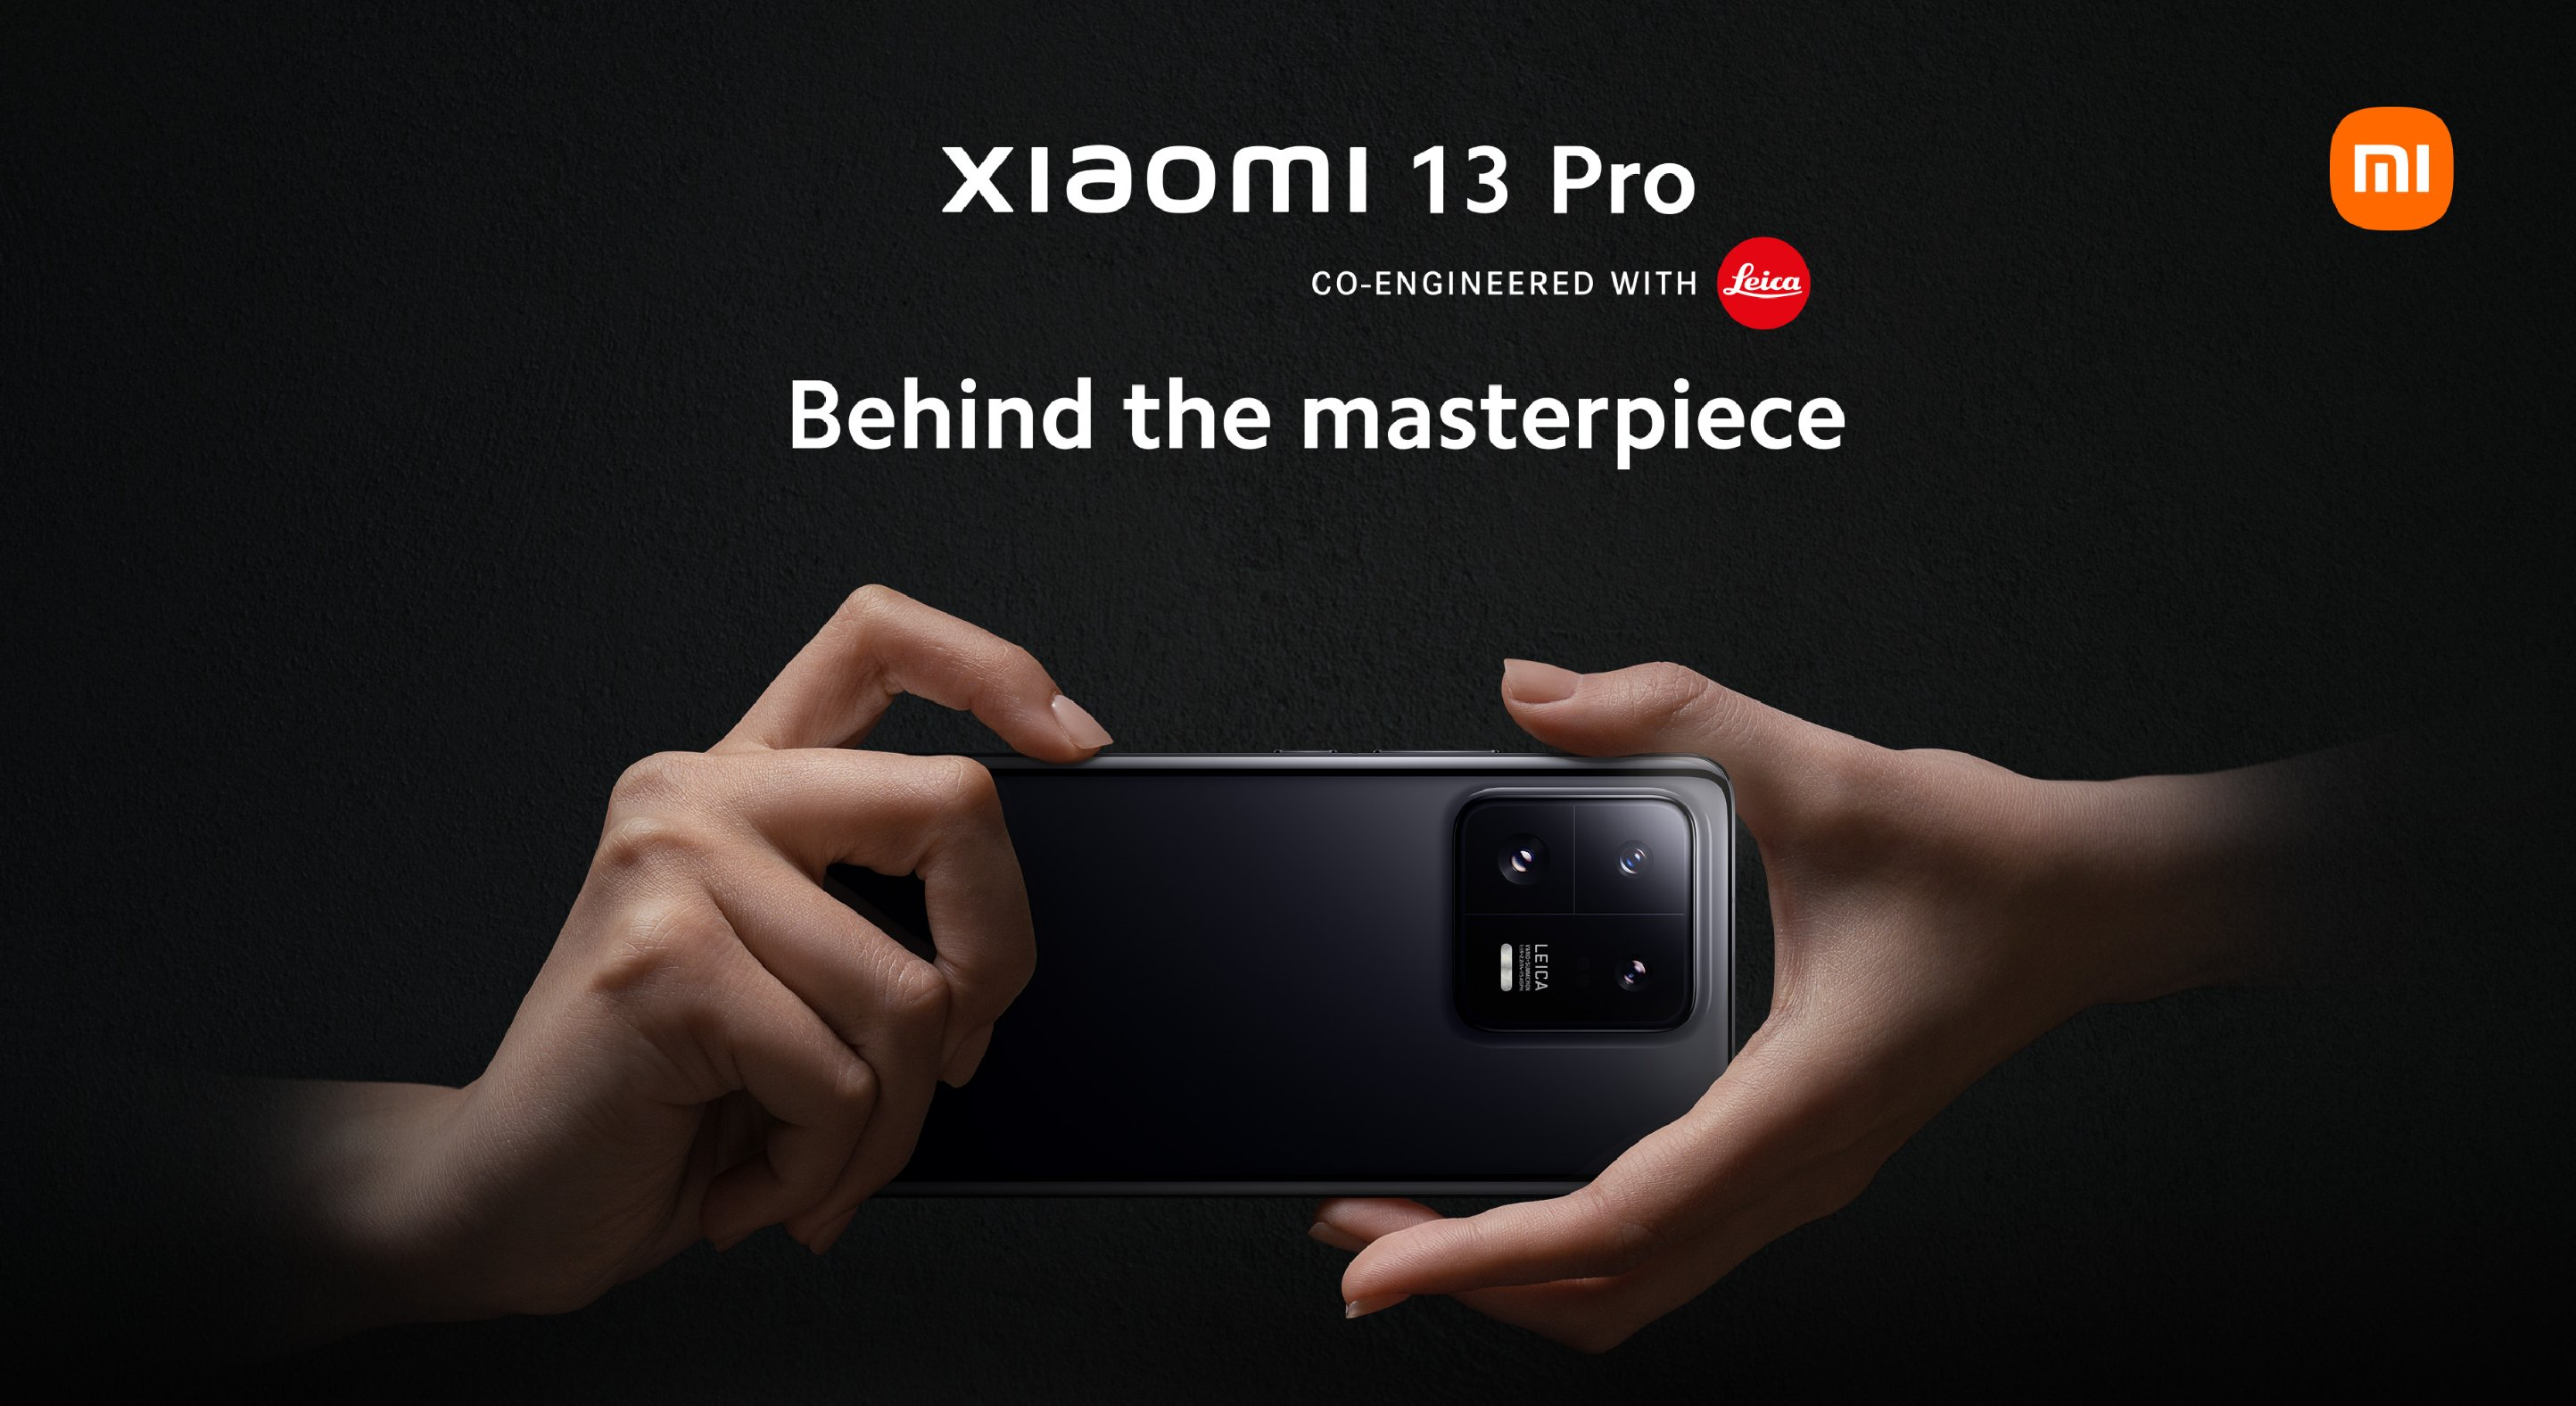 Snapdragon 8 Gen 2, 3K 120Hz Display, drei 50MP Leica Kameras mit 8K UHD Unterstützung und IP68 Preise ab €1299 - Xiaomi 13 Pro enthüllt